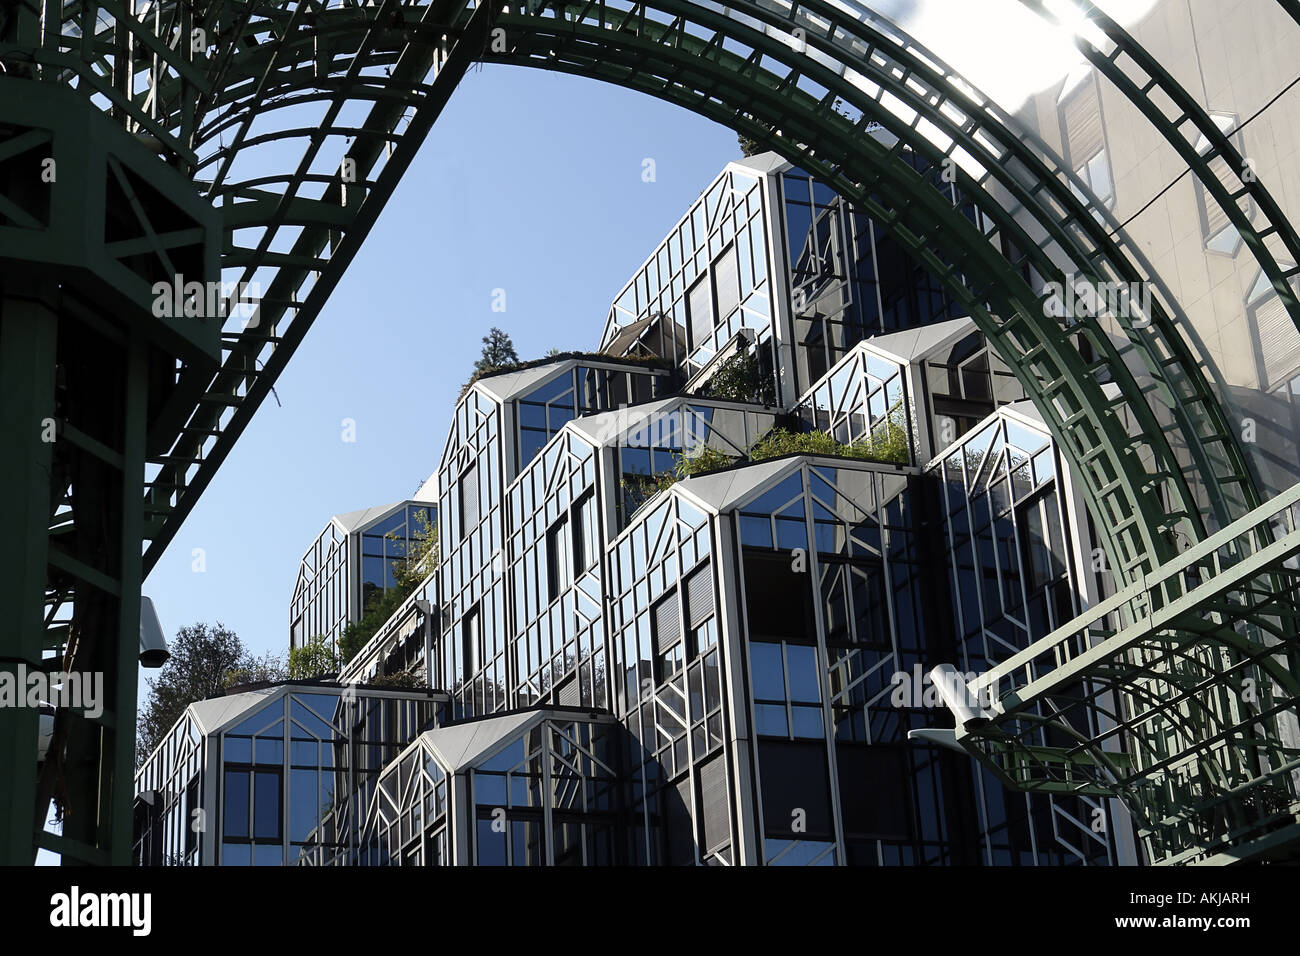 architecture in Les Halles Paris France Stock Photo